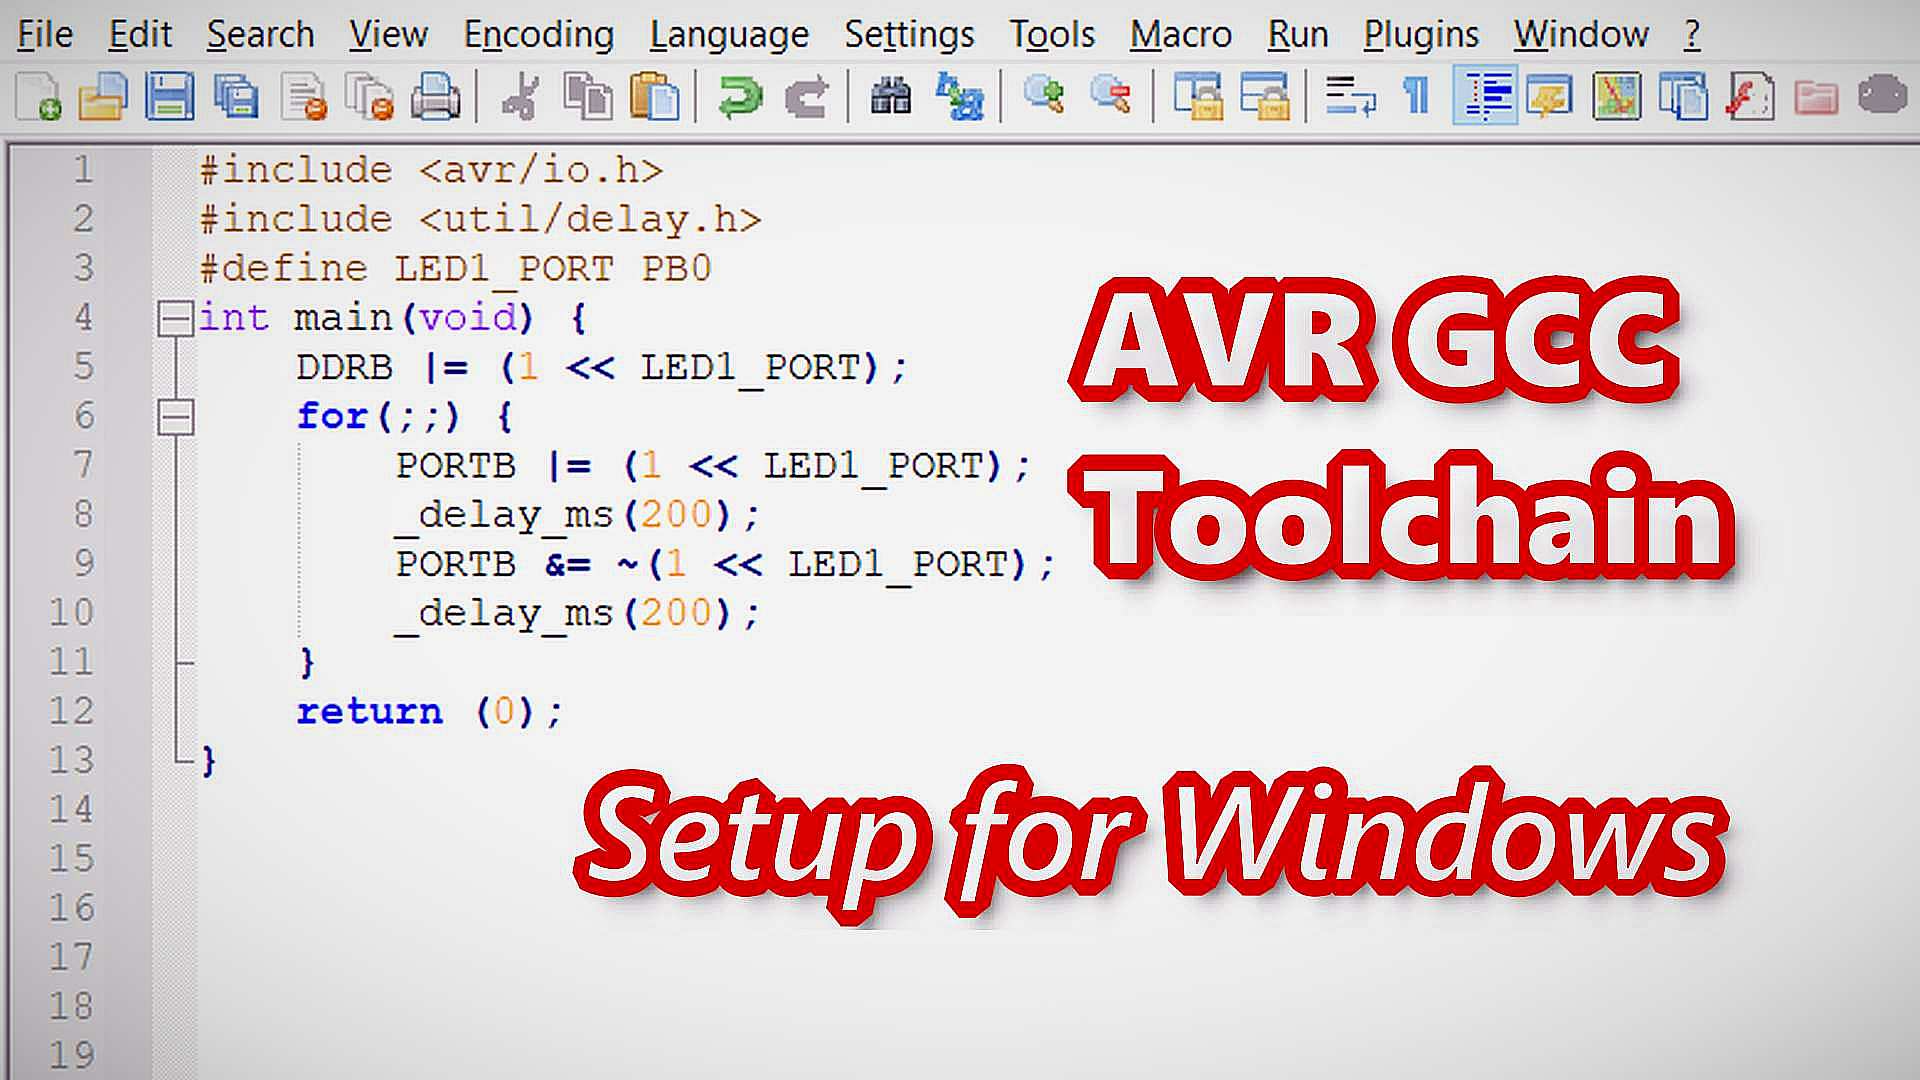 AVR GCC Toolchain - Setup for Windows